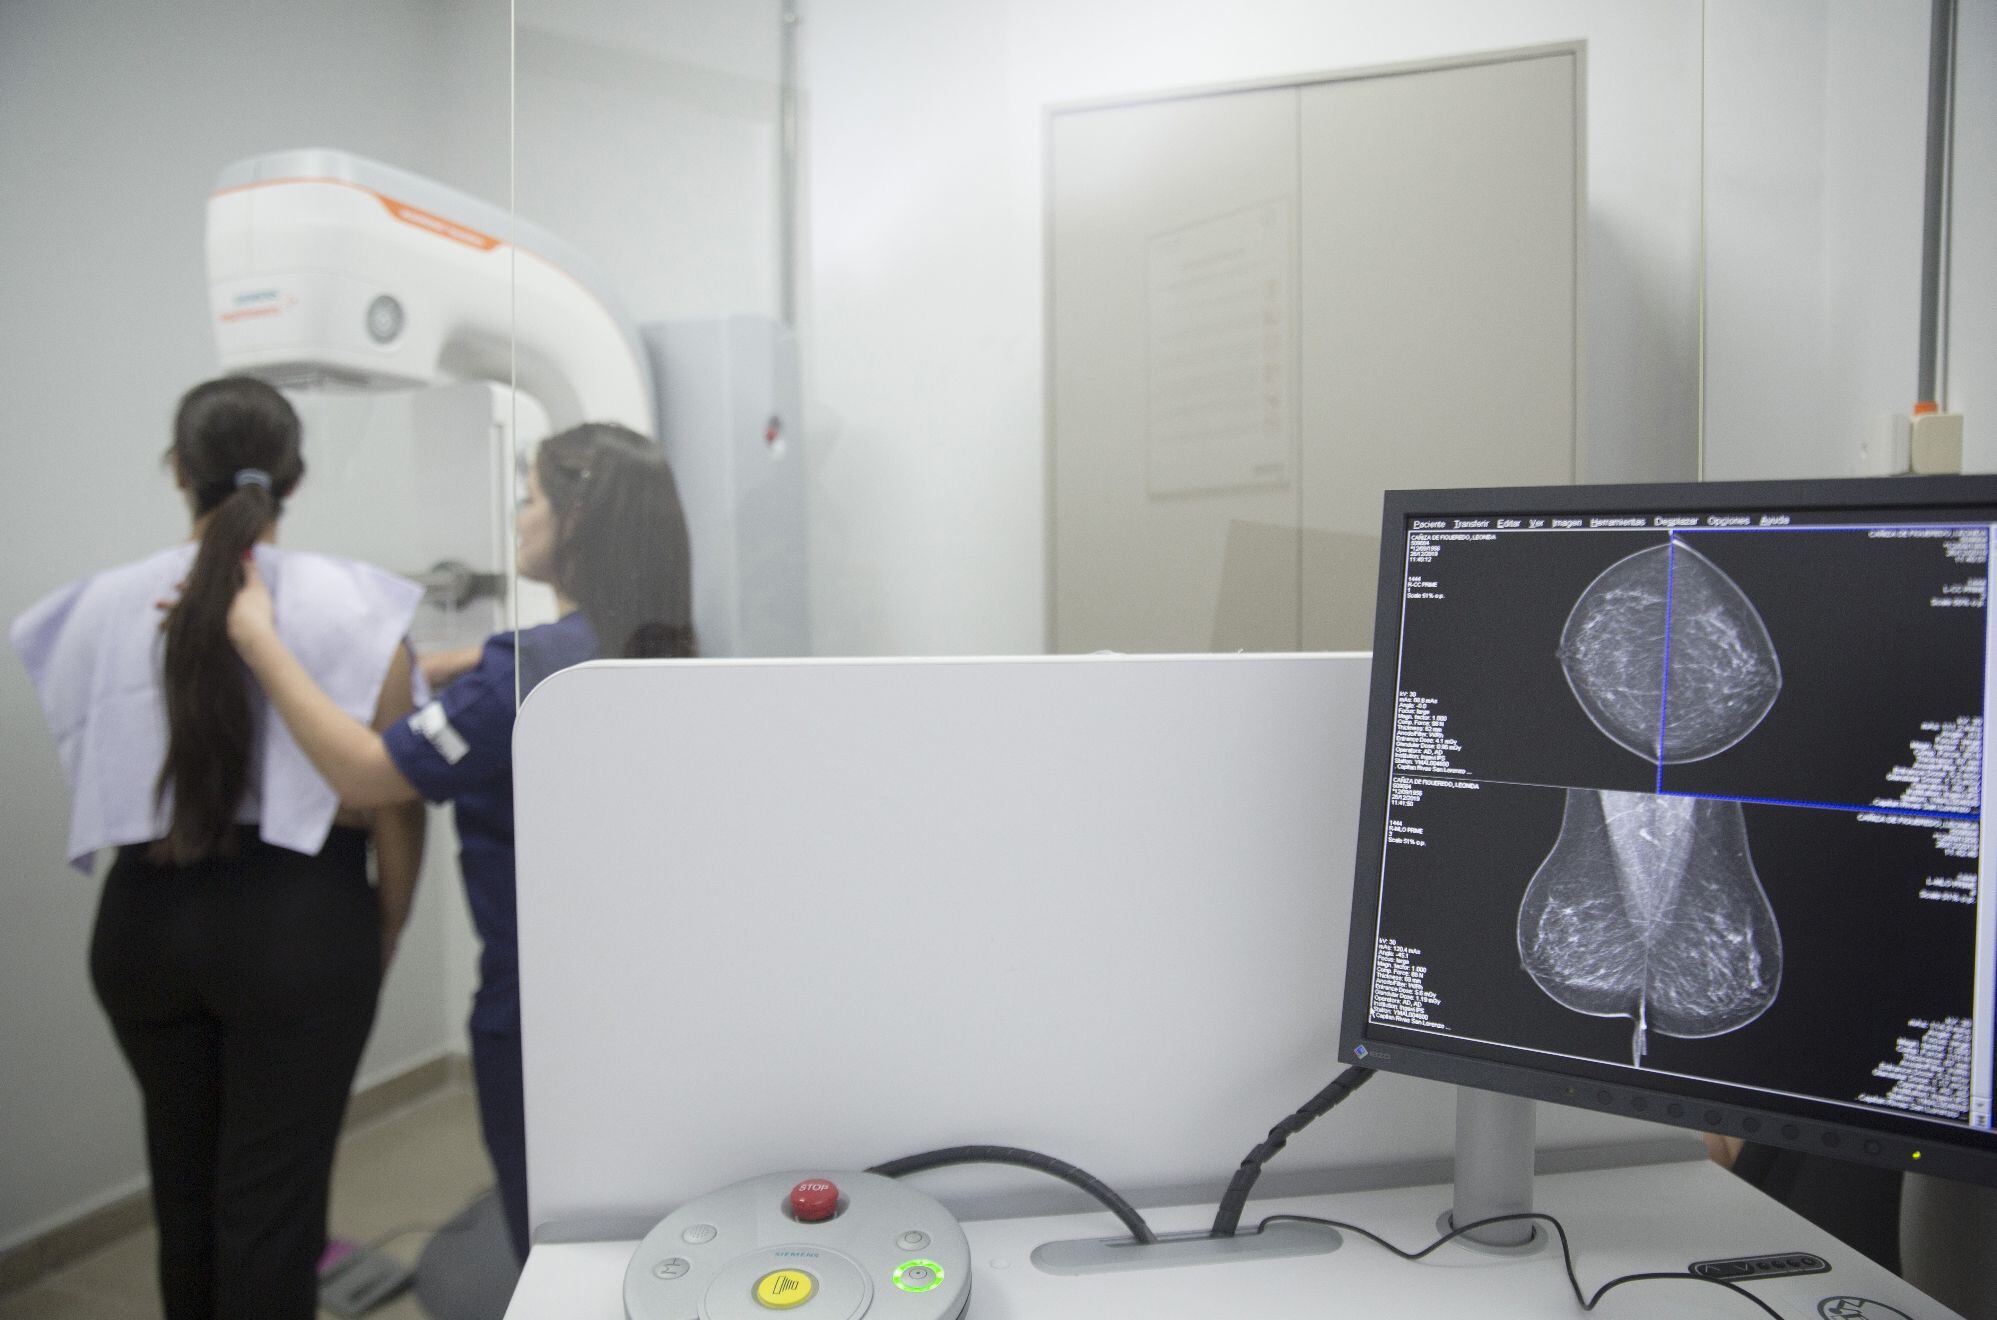 El nuevo mamógrafo instalado es uno de los últimos lanzamientos a nivel mundial, primero en Paraguay y uno de los primeros en Sudamérica.